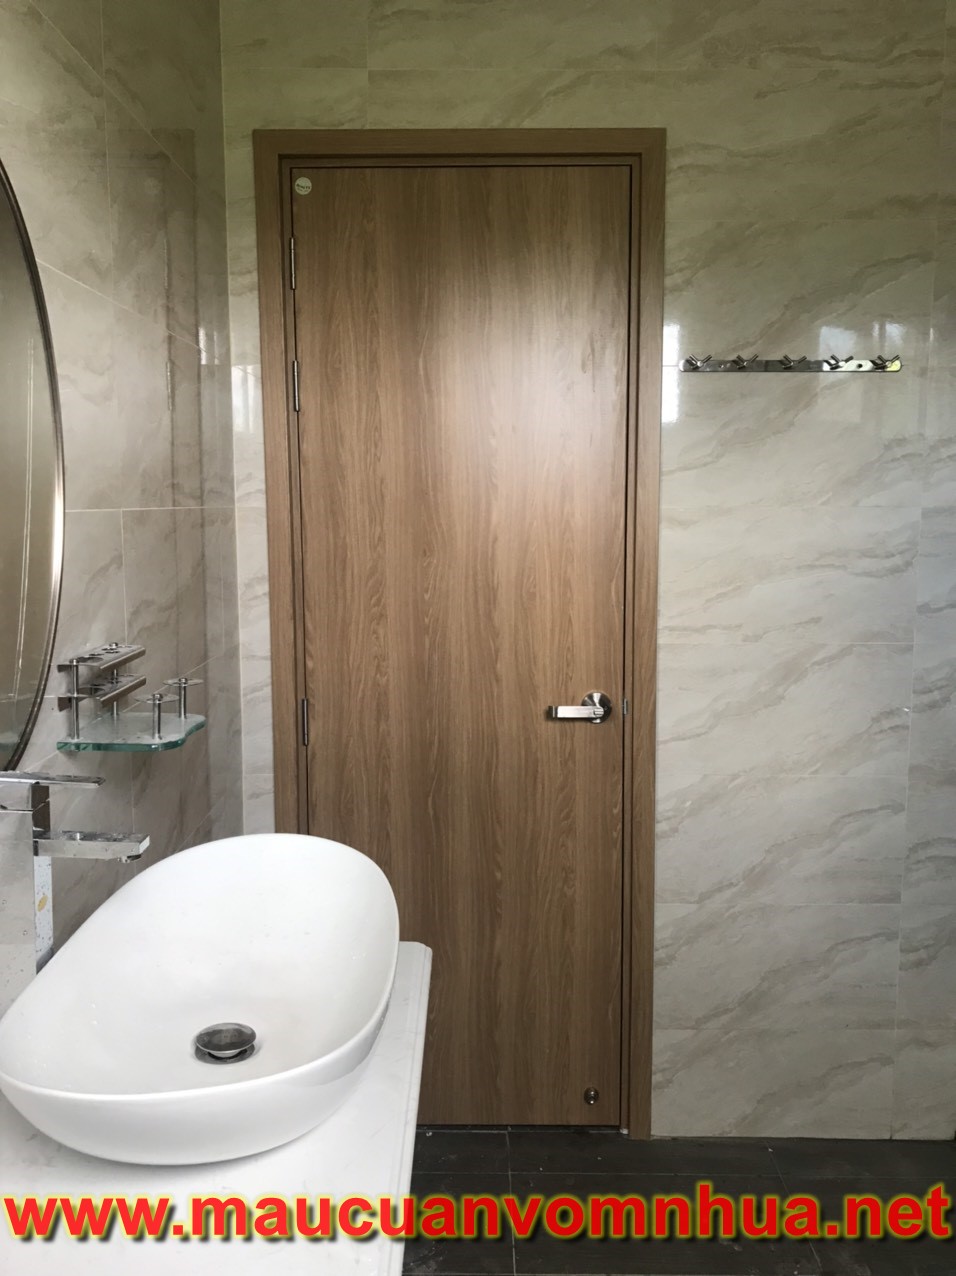 Cửa nhựa Composite phủ da cho nhà vệ sinh tại Diên Khánh